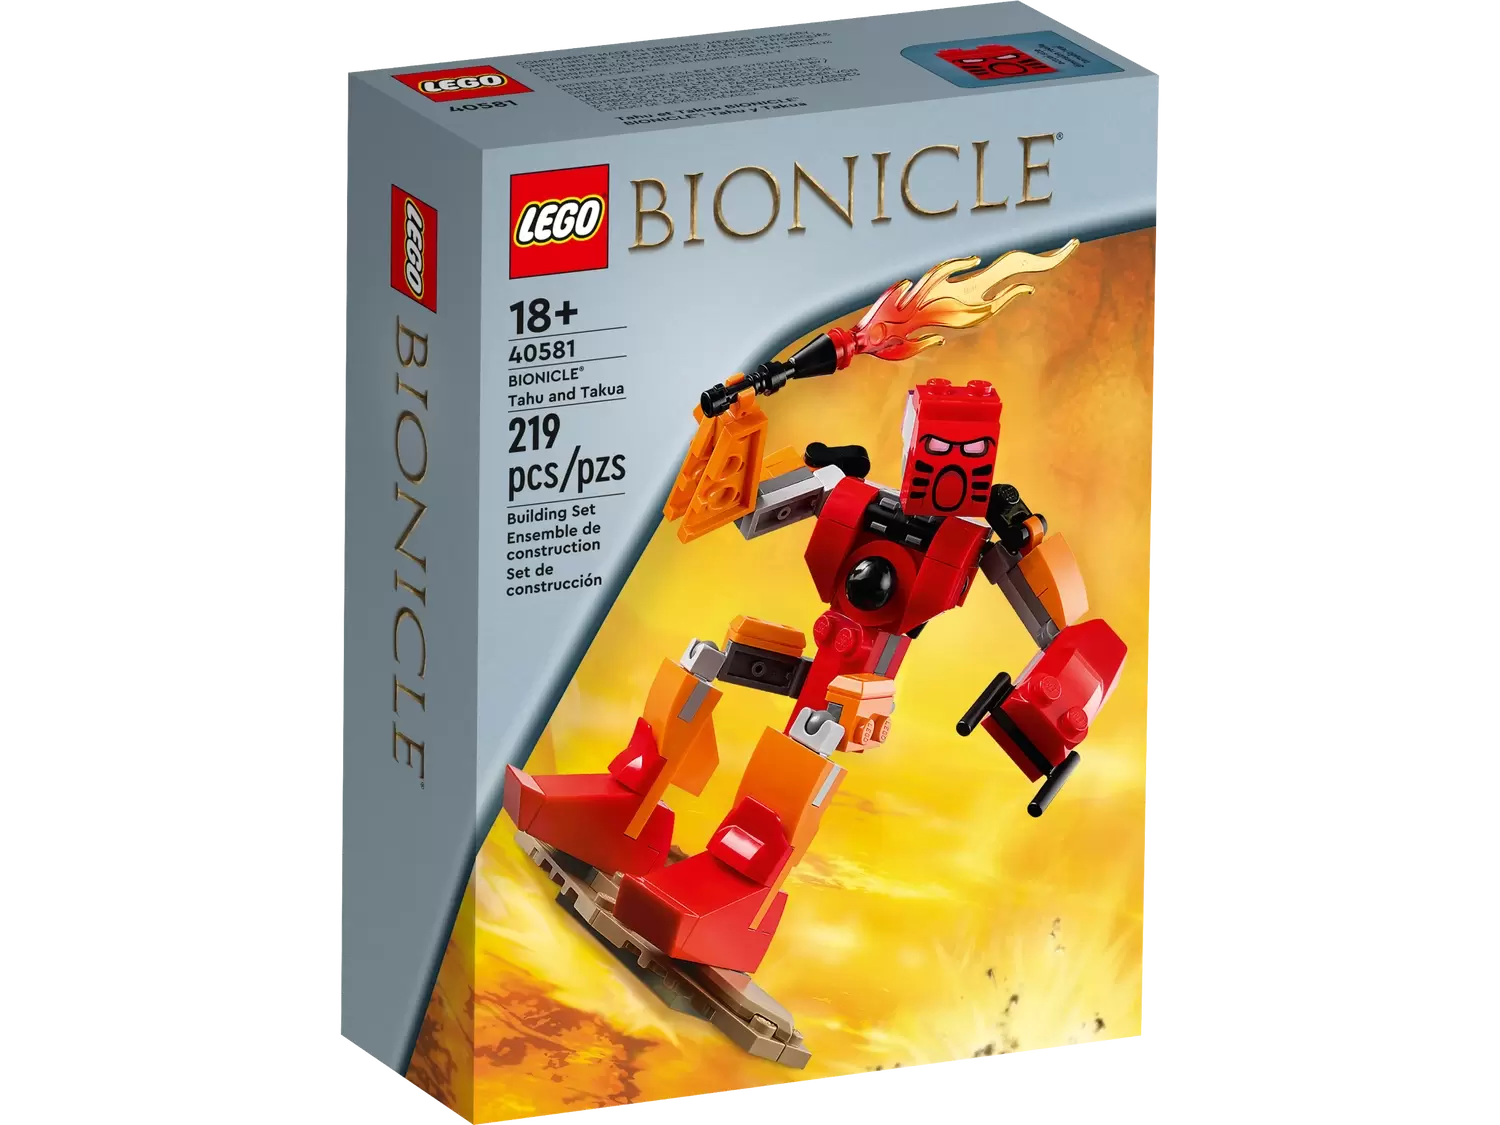 LEGO Bionicle - BIONICLE Tahu and Takua